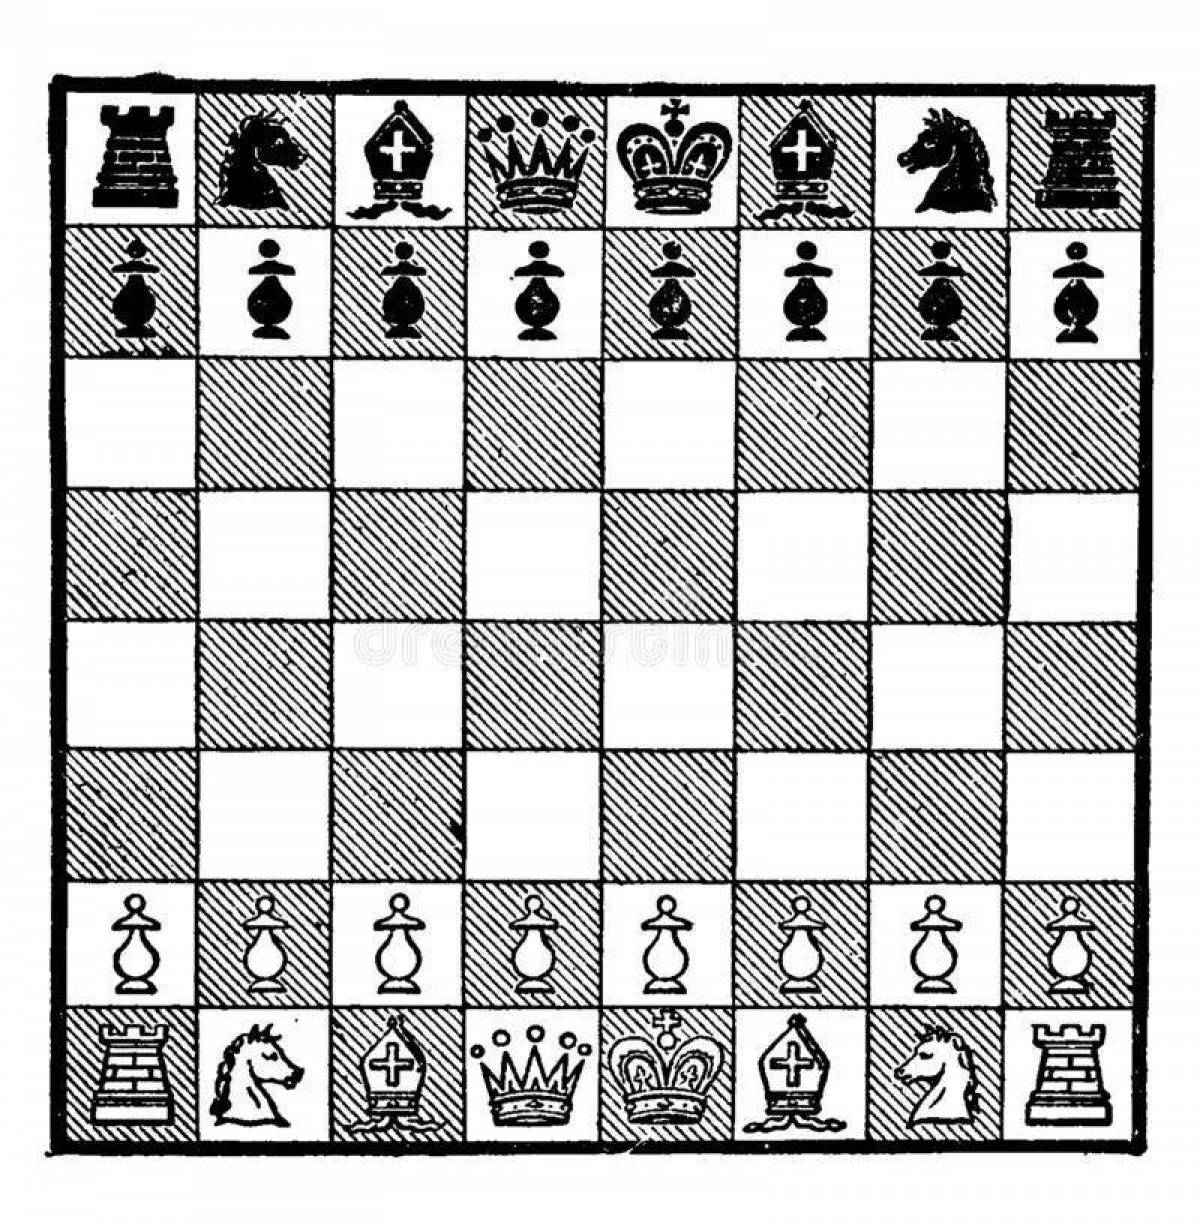 Children's chessboard #19